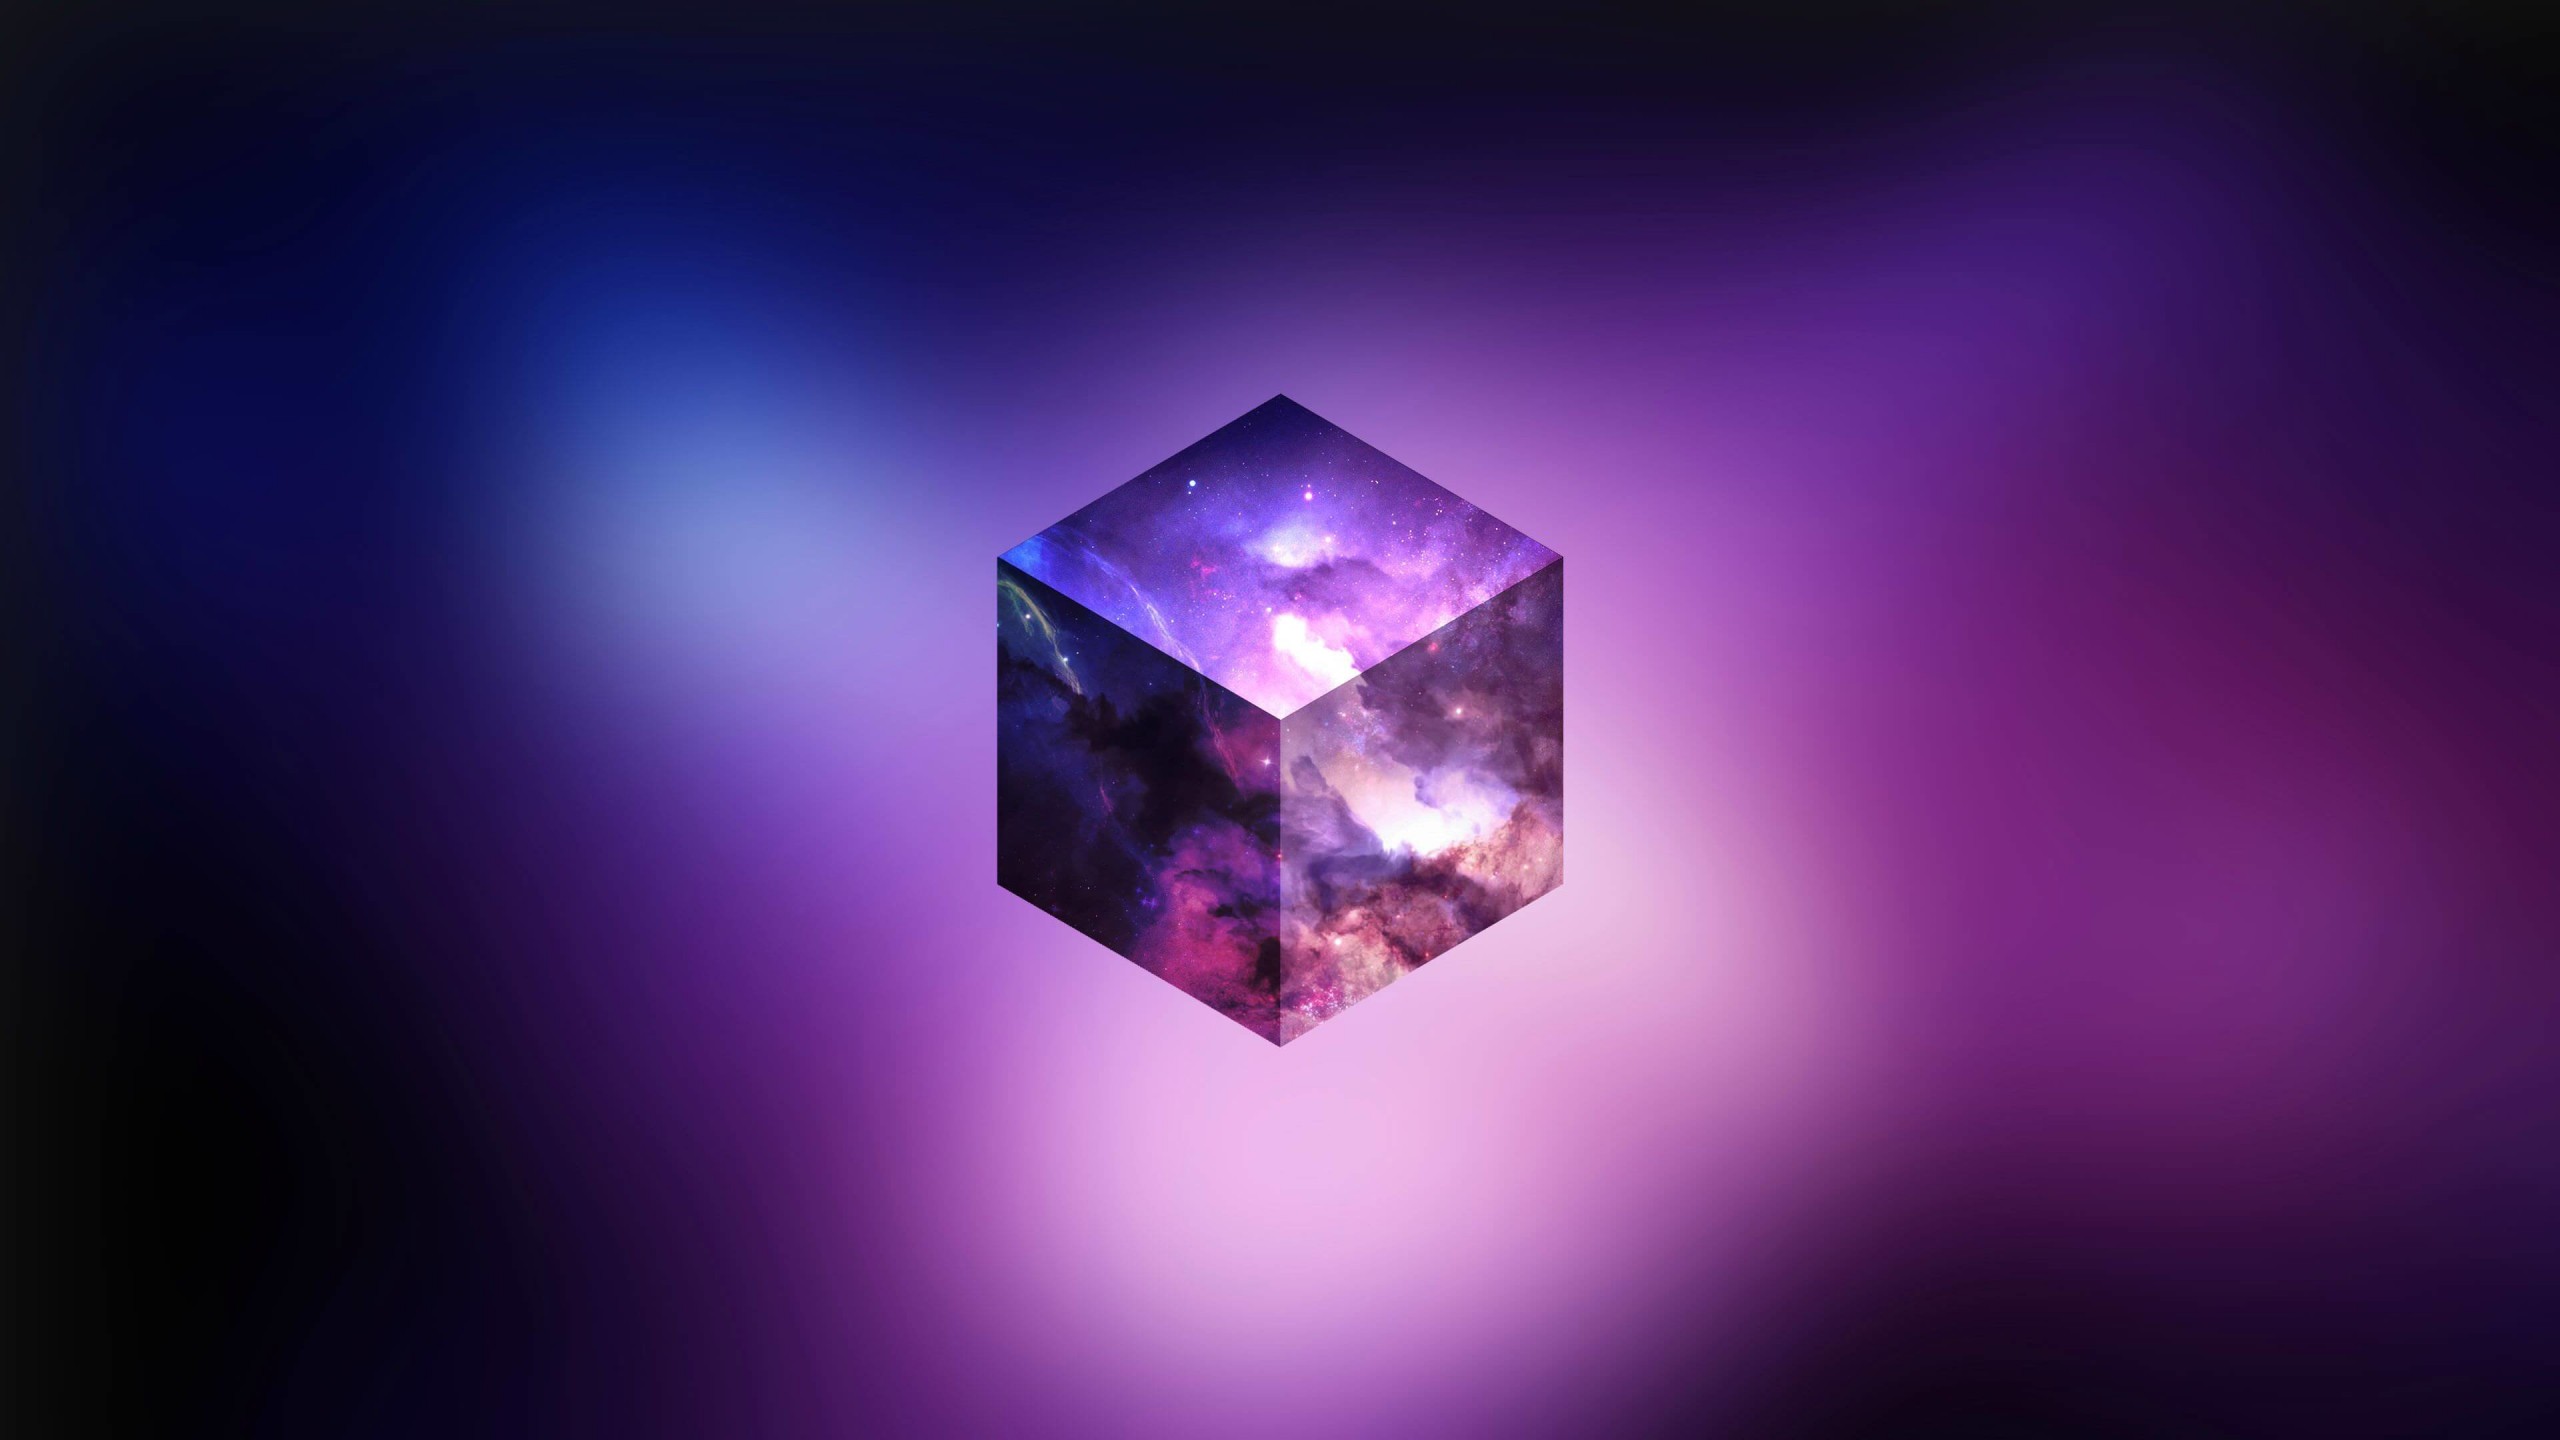 Cosmic Cube Wallpaper for Social Media YouTube Channel Art